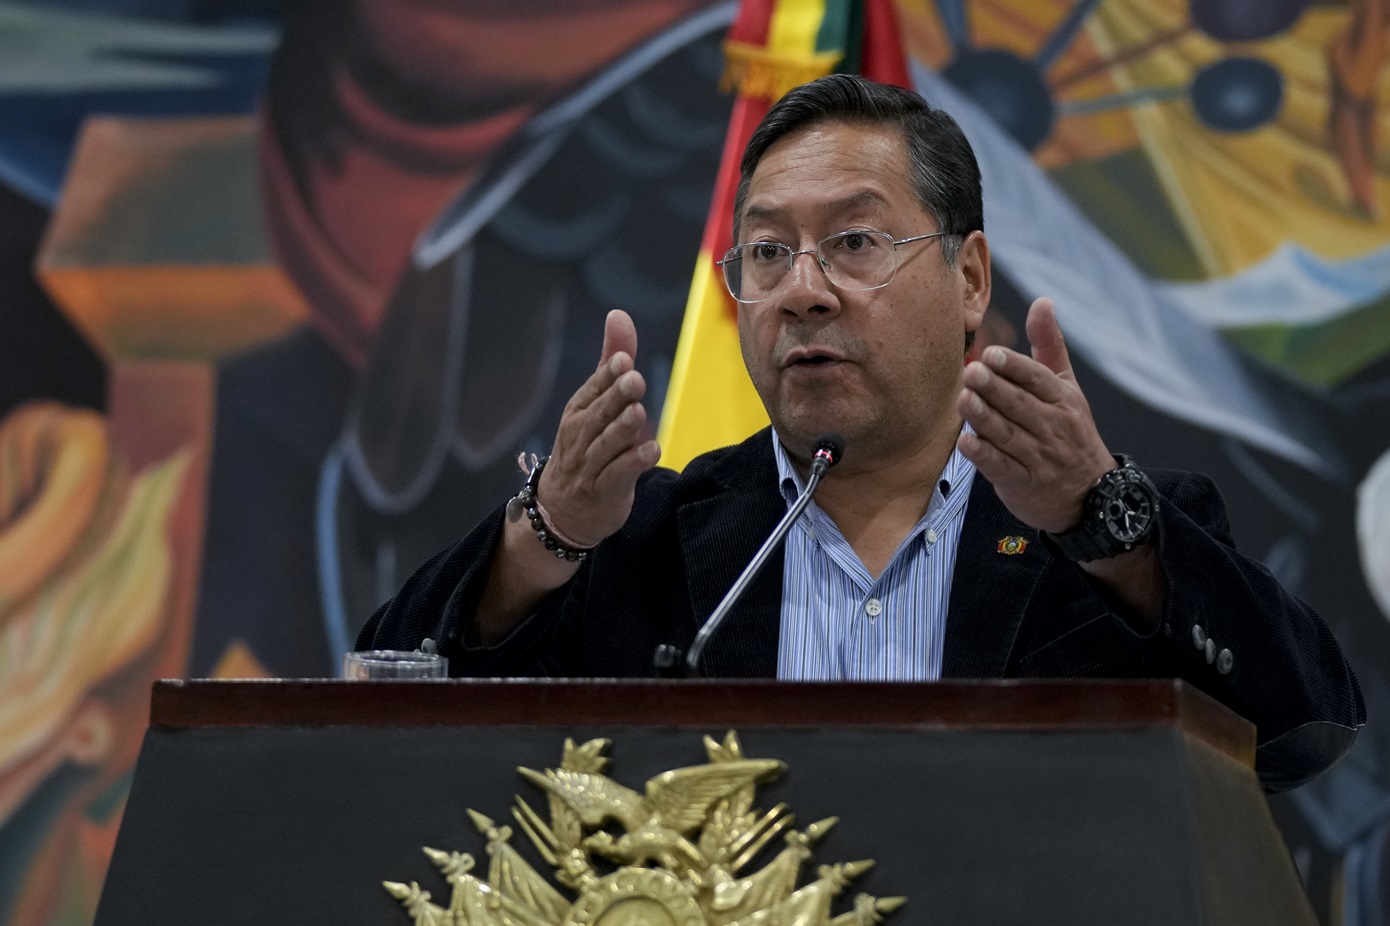 Κατηγορηματικός ο πρόεδρος της Βολιβίας – Αρνείται οποιαδήποτε εμπλοκή στην αποτυχημένη απόπειρα πραξικοπήματος